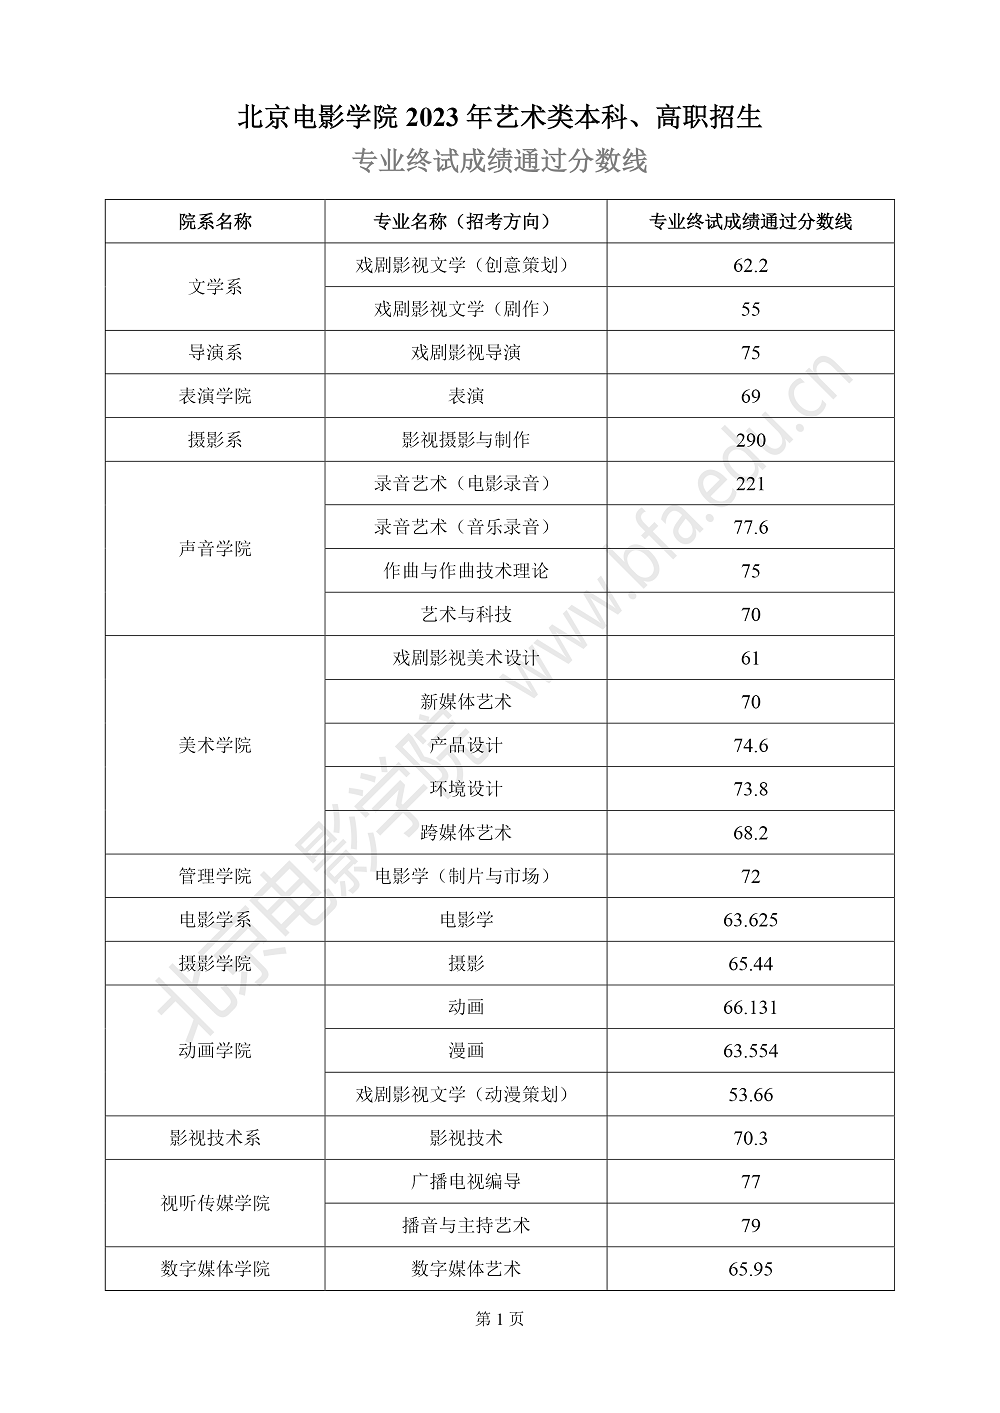 北京电影学院2023年艺术类本科、高职招生专业终试成绩通过分数线-1.png